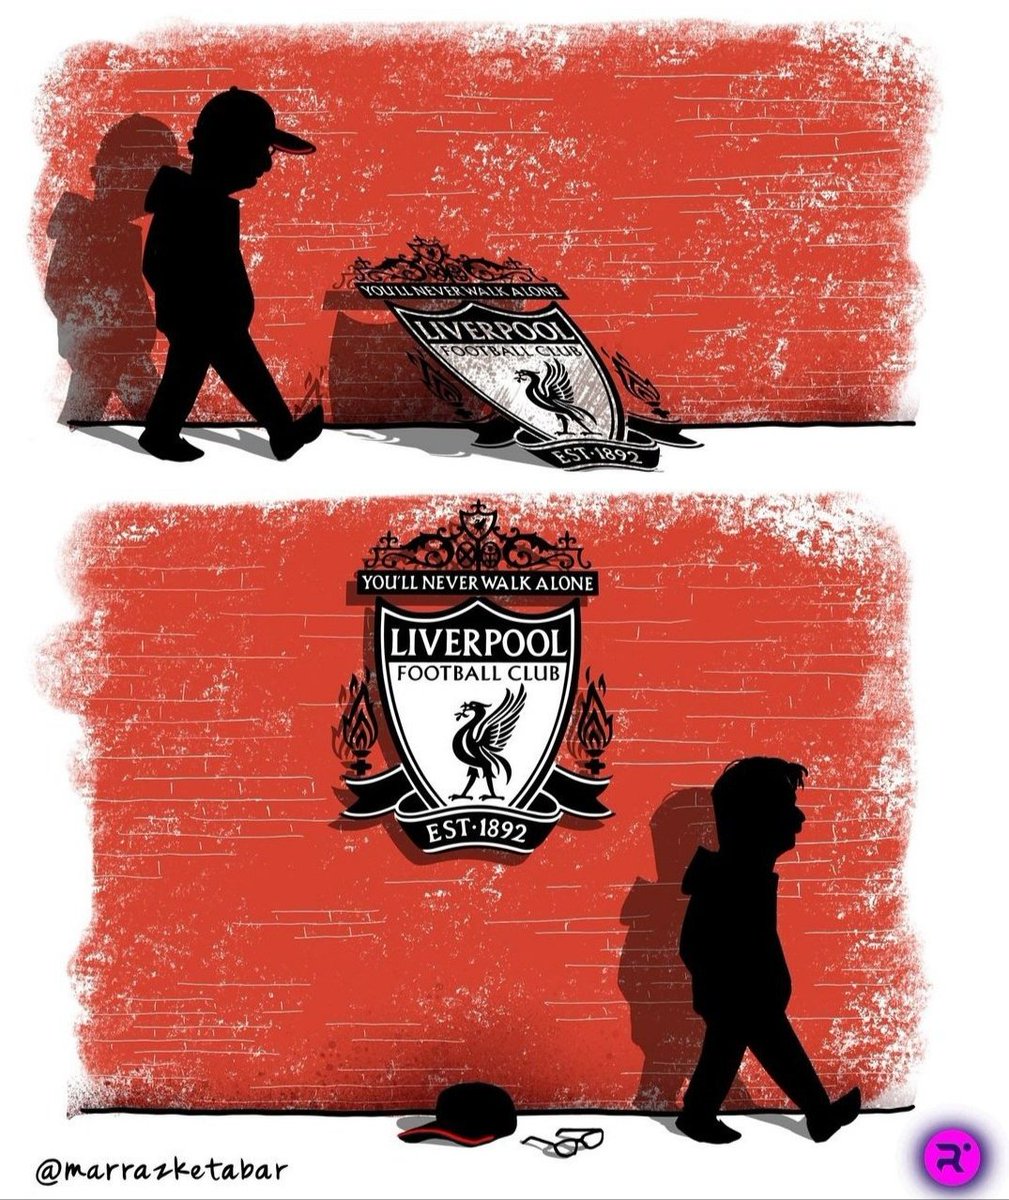 Essa imagem resume perfeitamente o trabalho de Jürgen Klopp no Liverpool ❤️